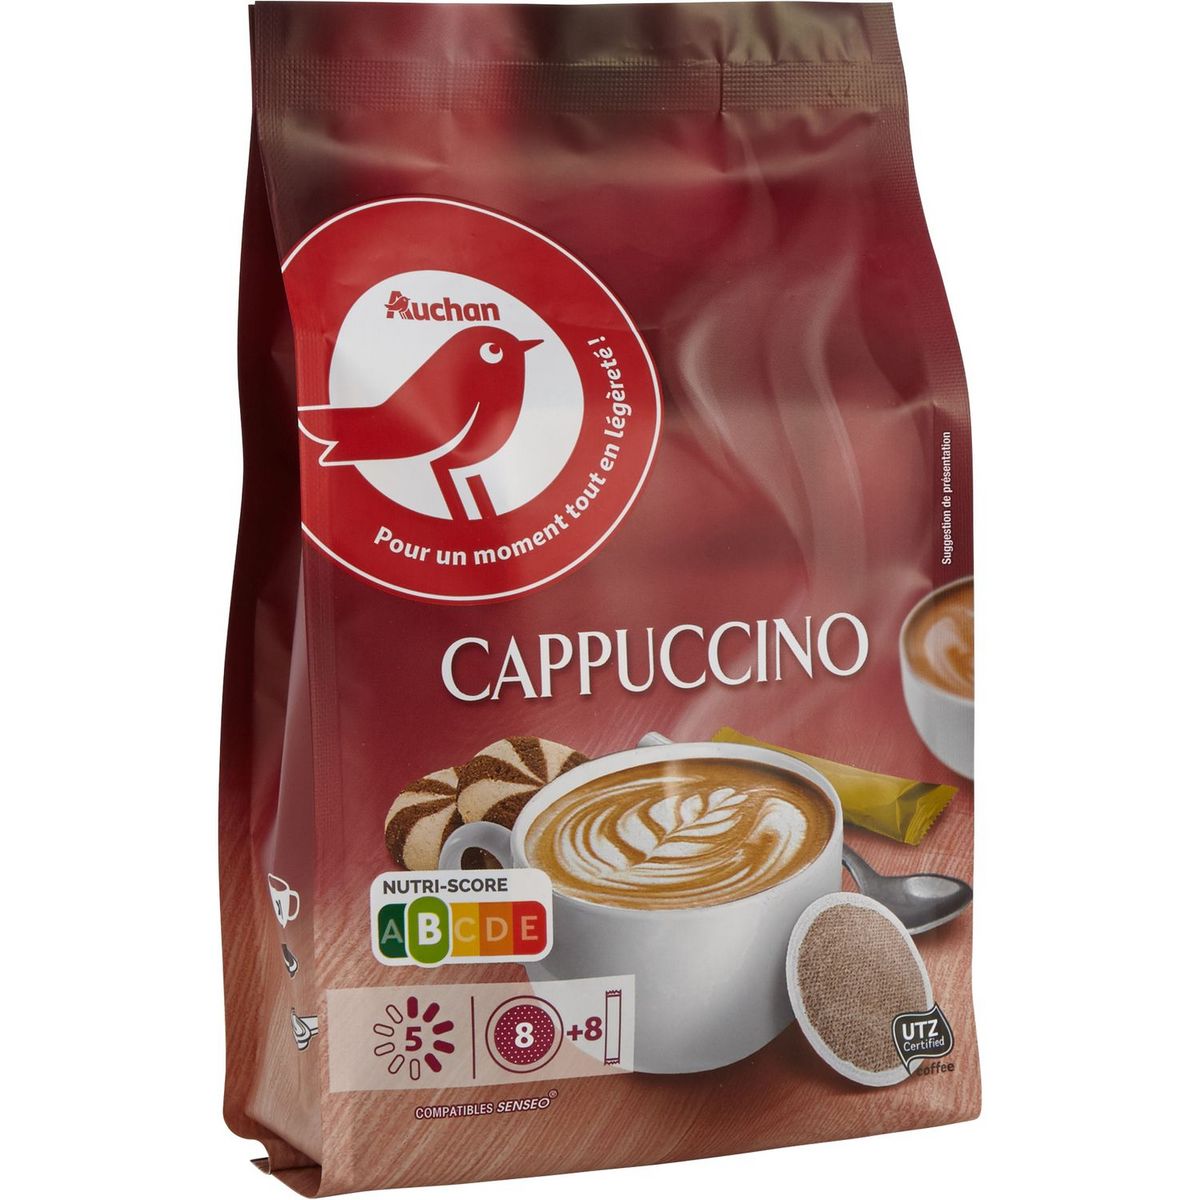 AUCHAN Dosettes de café cappuccino compatibles Senseo 8 dosettes 95g pas  cher 